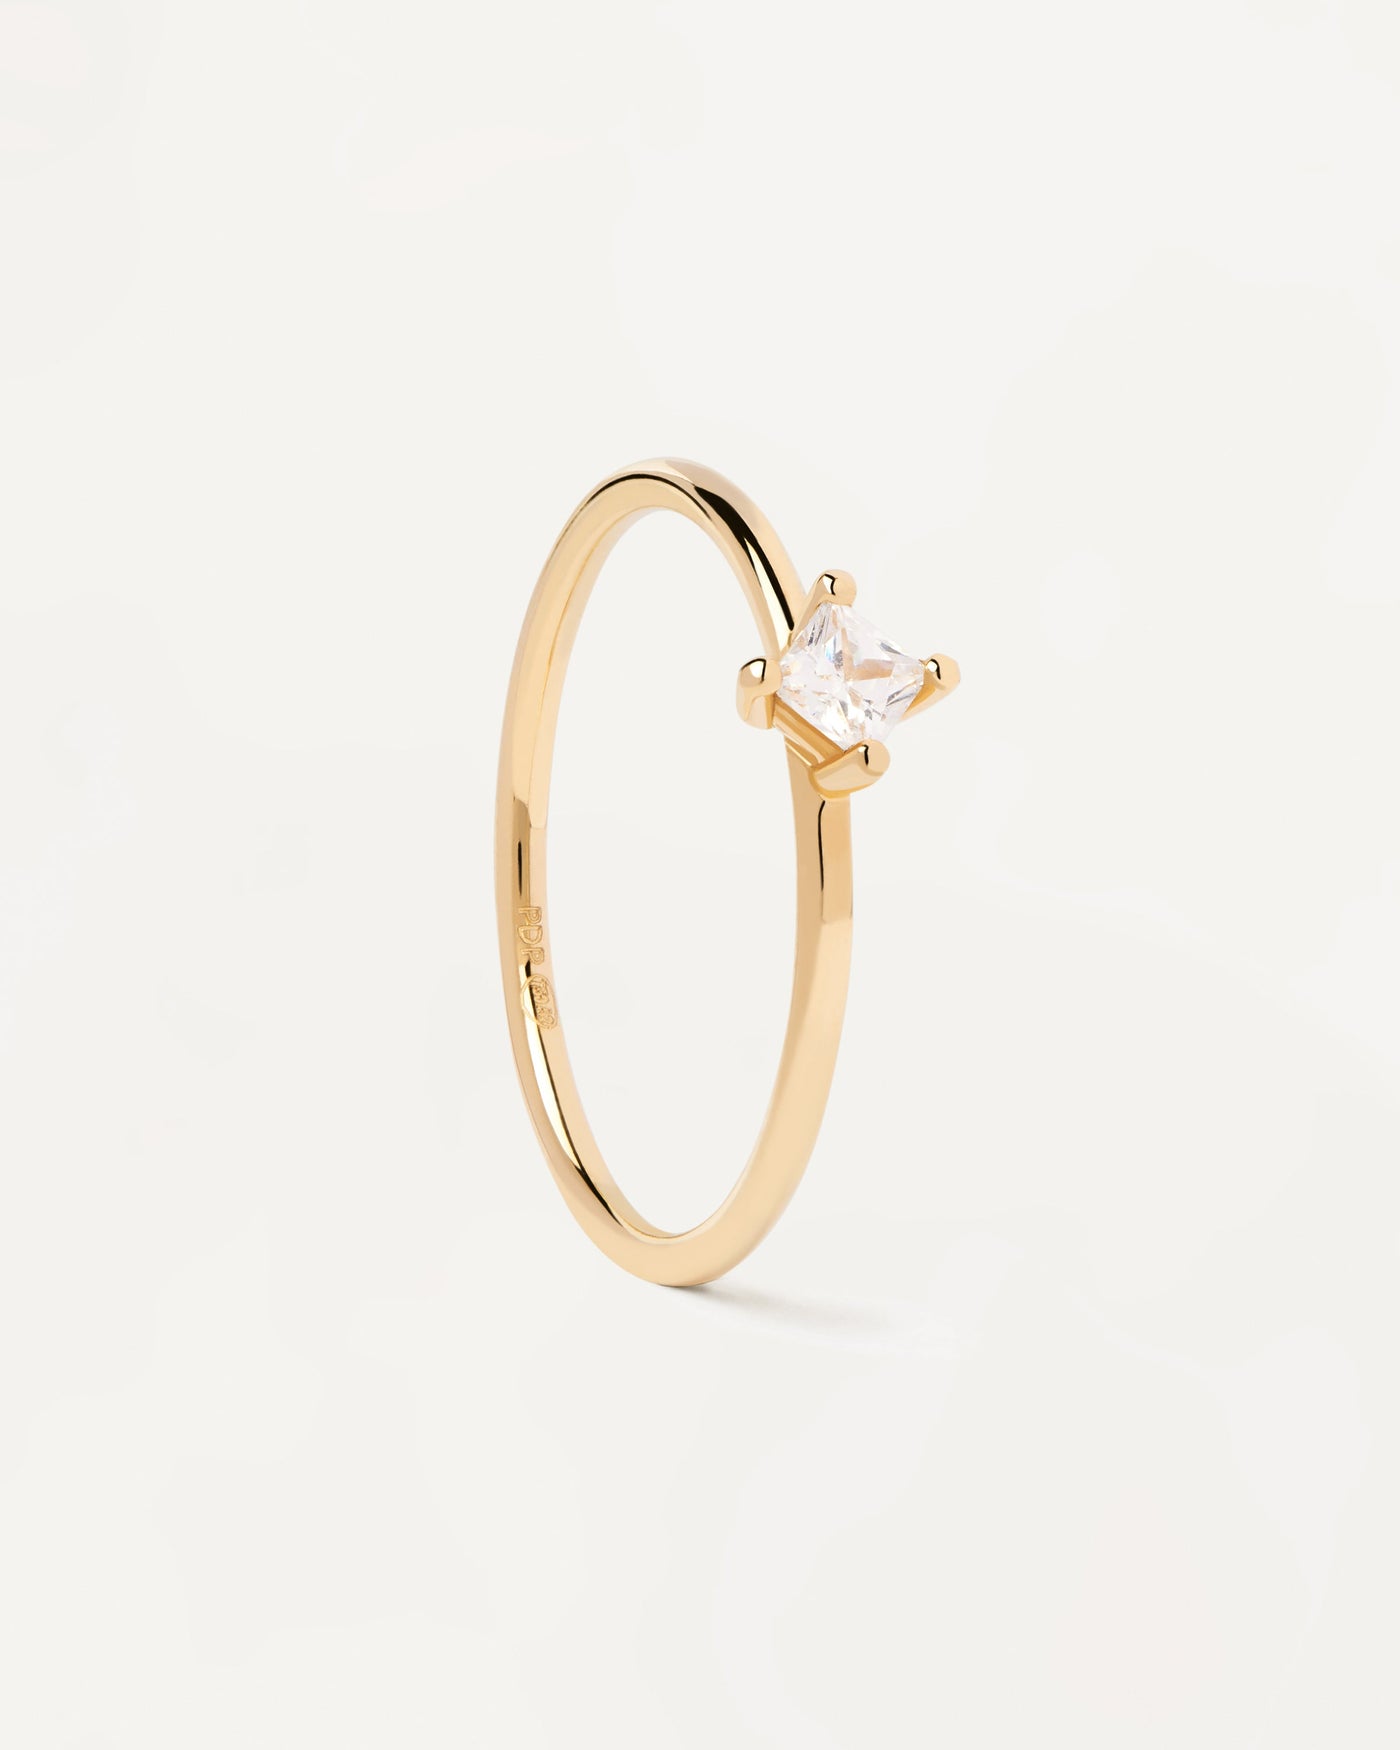 Solitär-GoldRing mit Quadratischem Diamant. Ring aus massivem Gelbgold mit Prinzessinnendiamant von 0,17 Karat. Erhalten Sie die neuesten Produkte von PDPAOLA. Geben Sie Ihre Bestellung sicher auf und erhalten Sie diesen Bestseller.